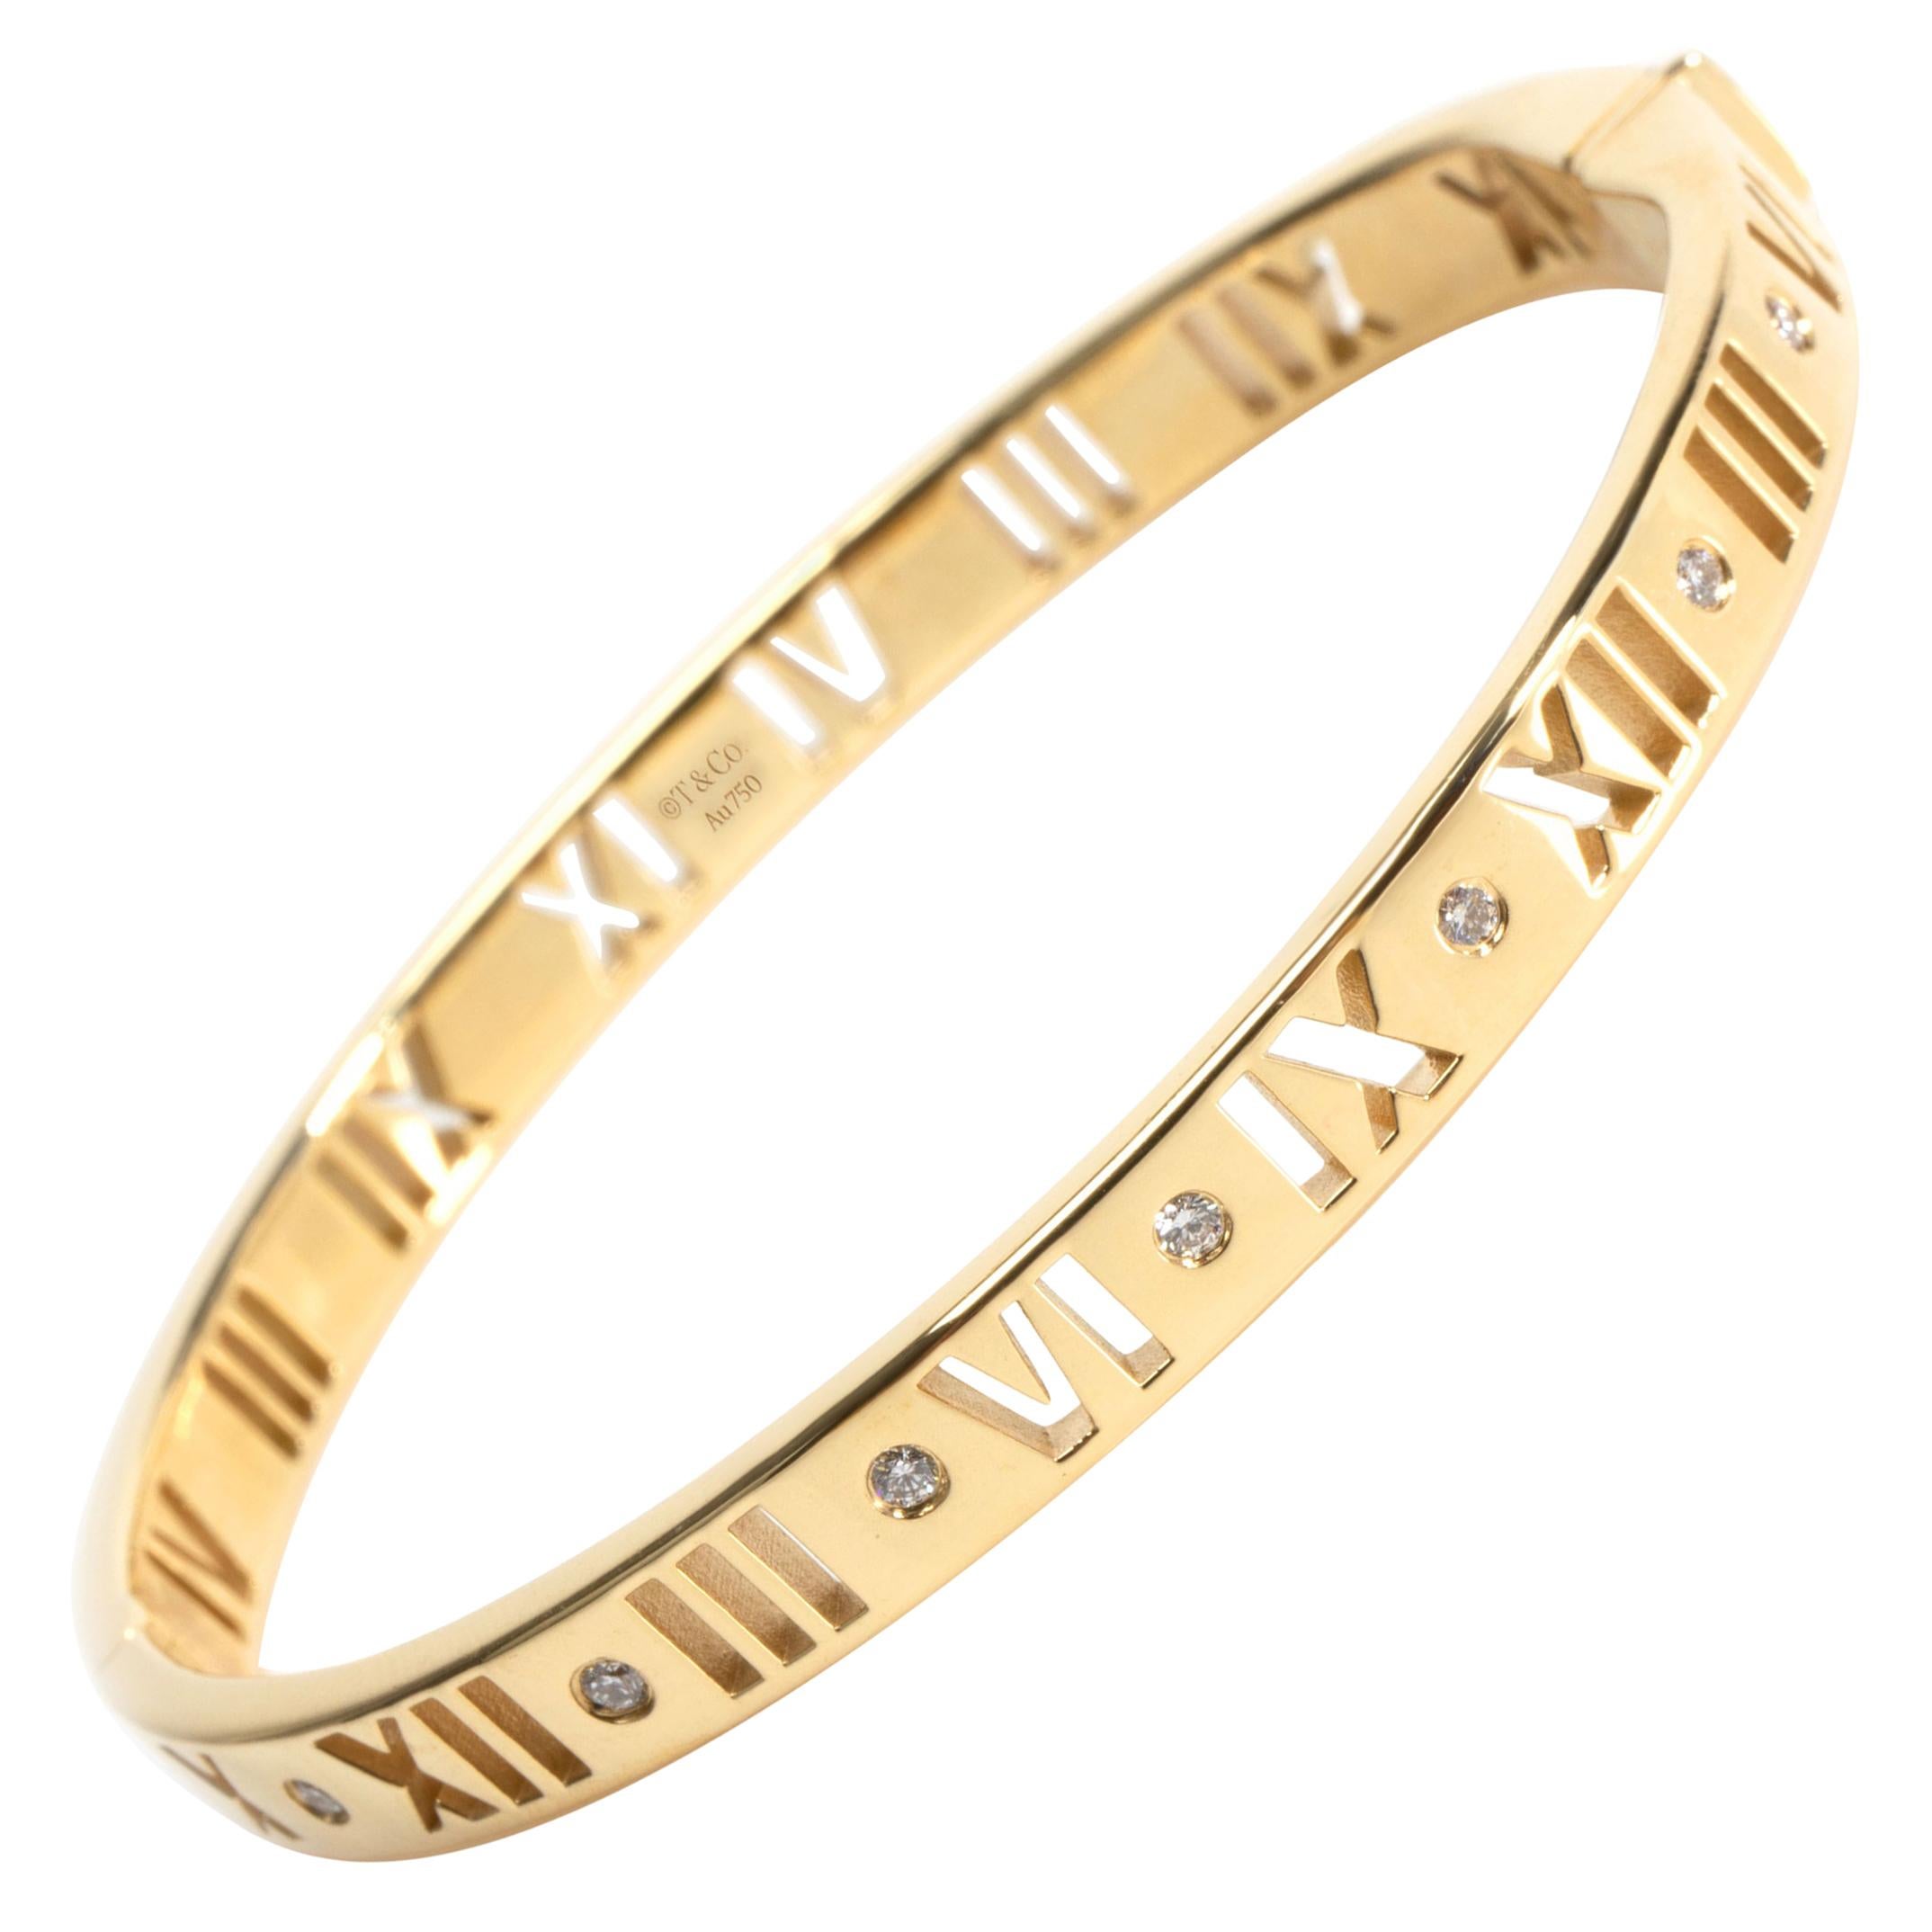 Tiffany & Co. Atlas Pierced Hinged Diamond Bracelet in 18 Karat Yellow Gold